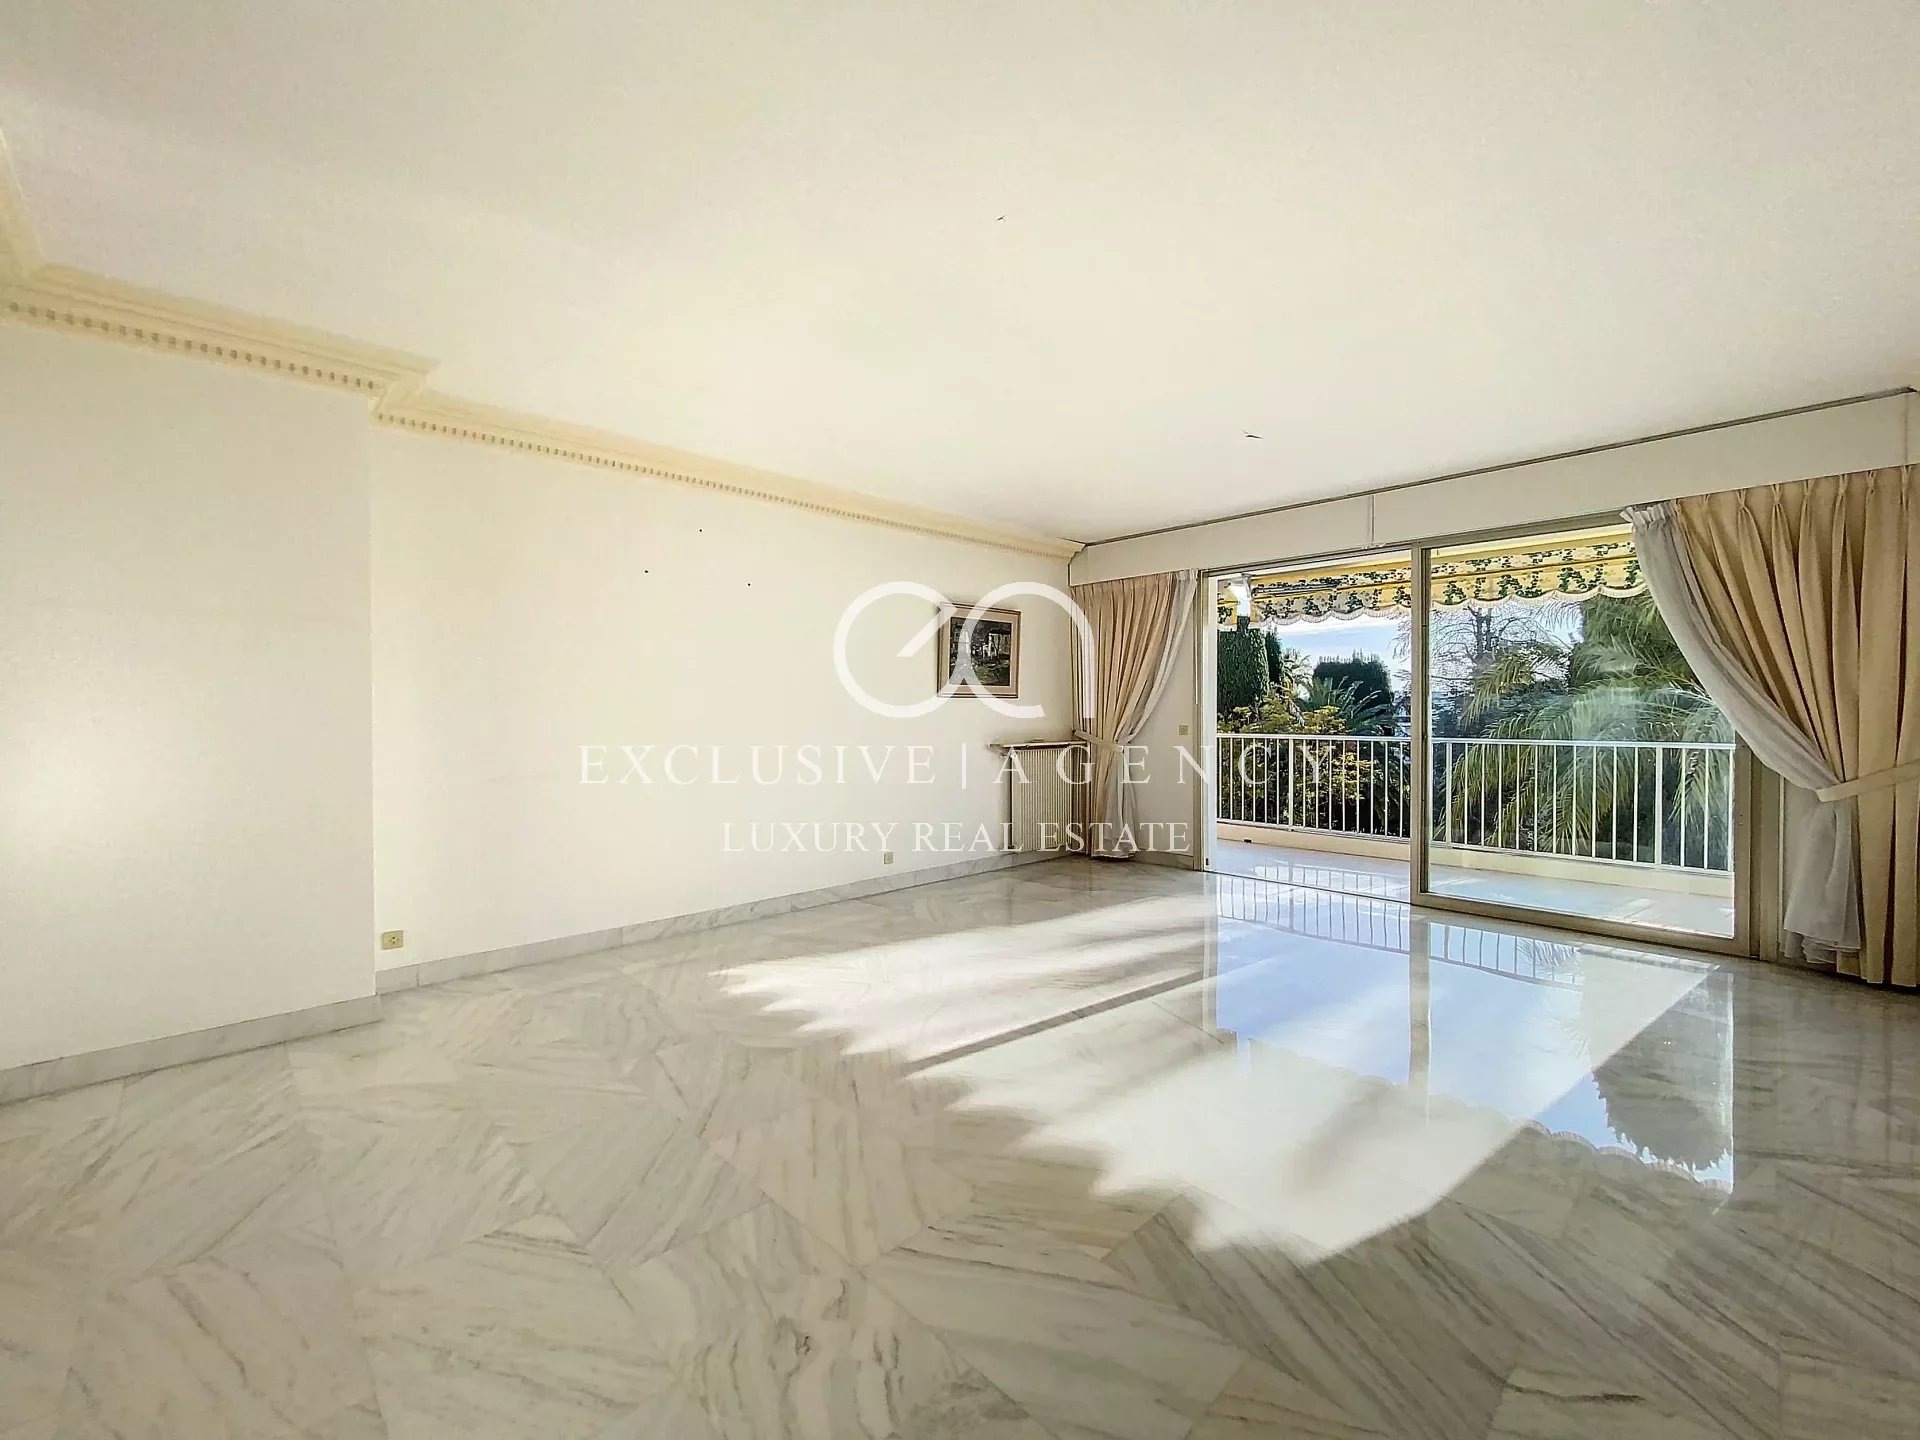 Verkoop Cannes 4 kamers 118m² met terras en zeezicht